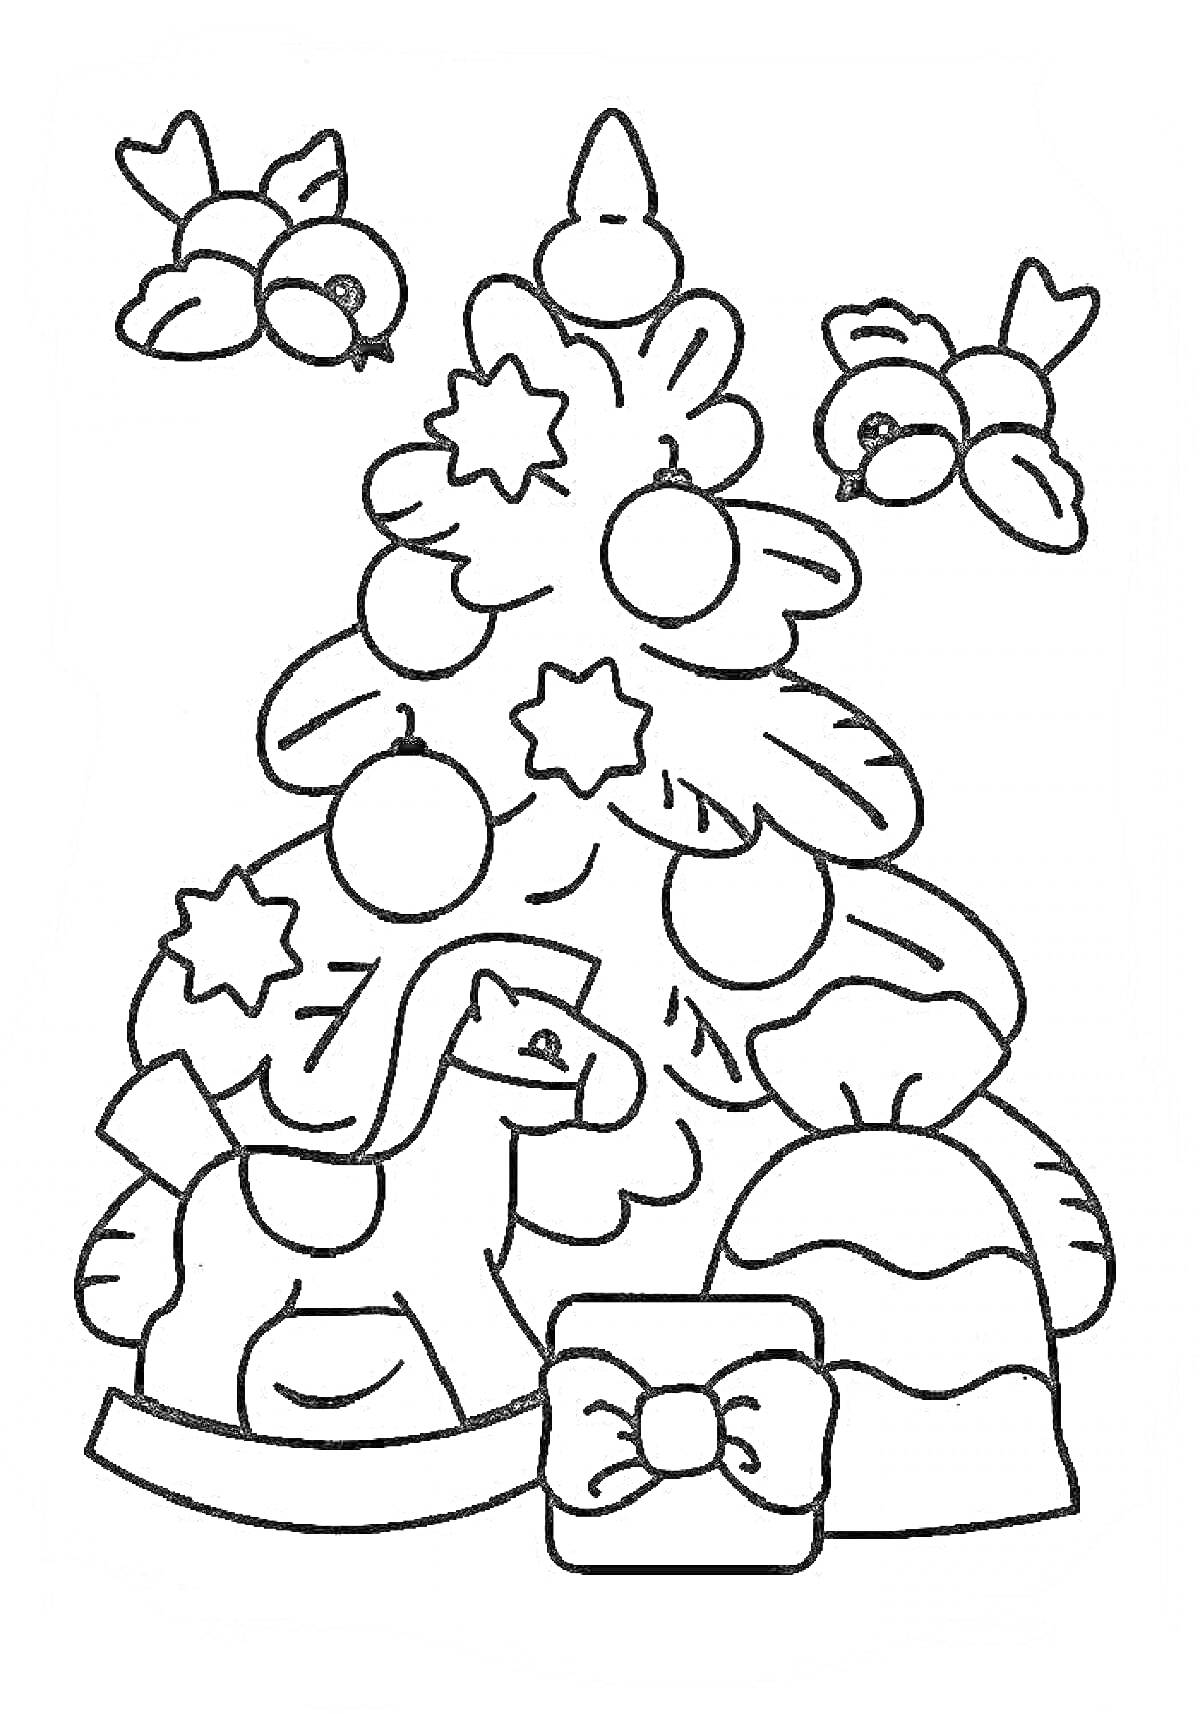 Раскраска новогодняя елочка с шарами, звездами, игрушечной лошадкой и подарками